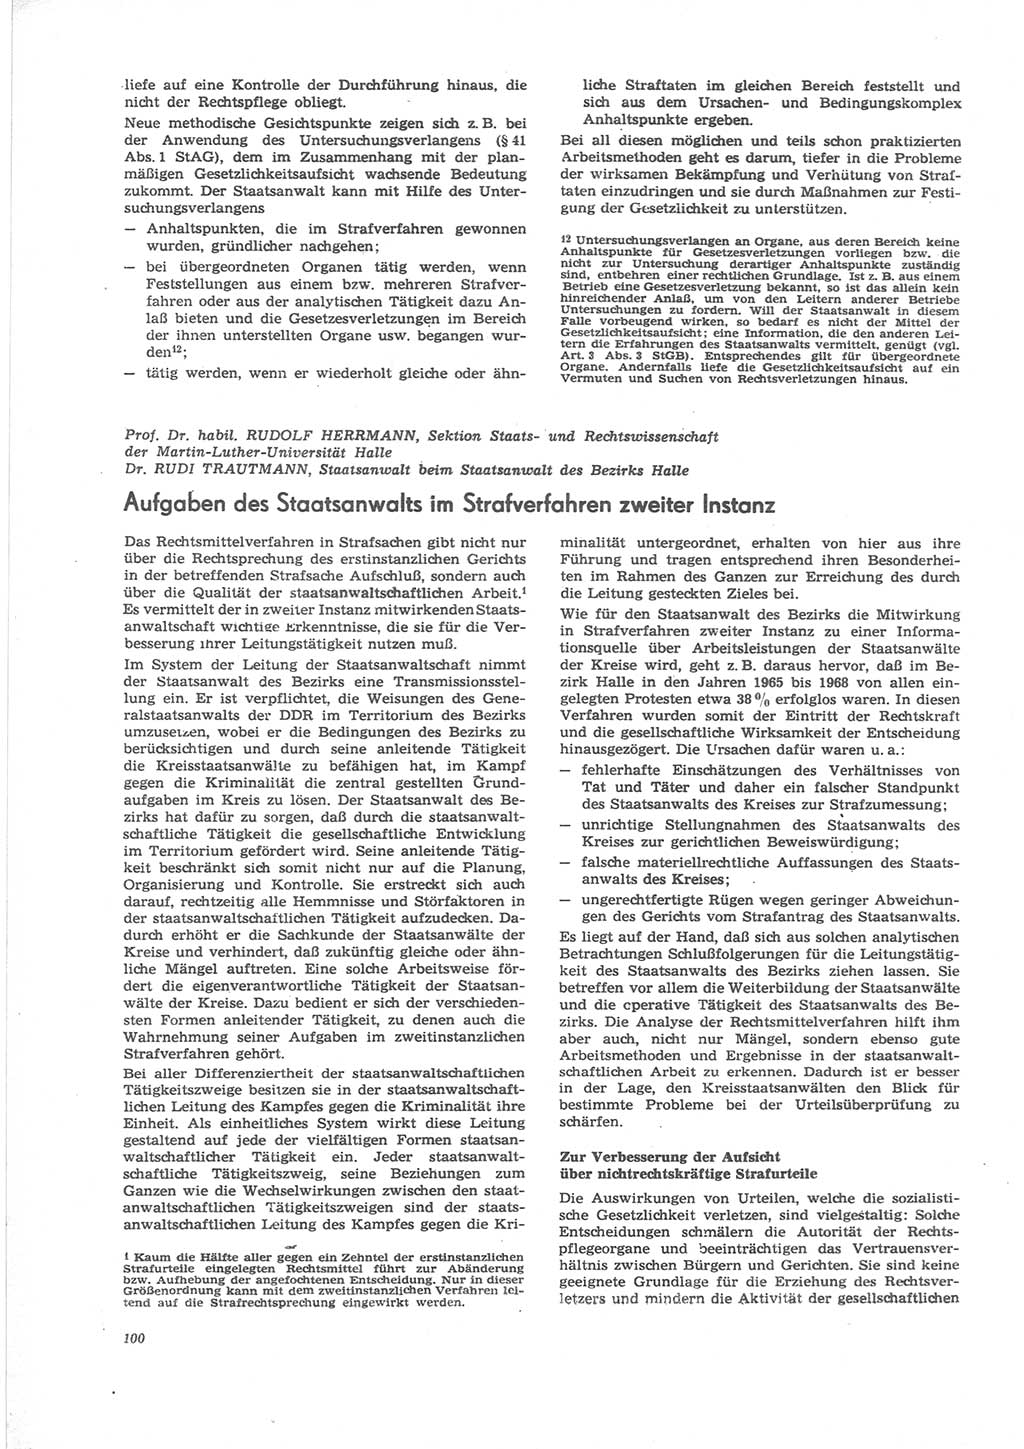 Neue Justiz (NJ), Zeitschrift für Recht und Rechtswissenschaft [Deutsche Demokratische Republik (DDR)], 24. Jahrgang 1970, Seite 100 (NJ DDR 1970, S. 100)